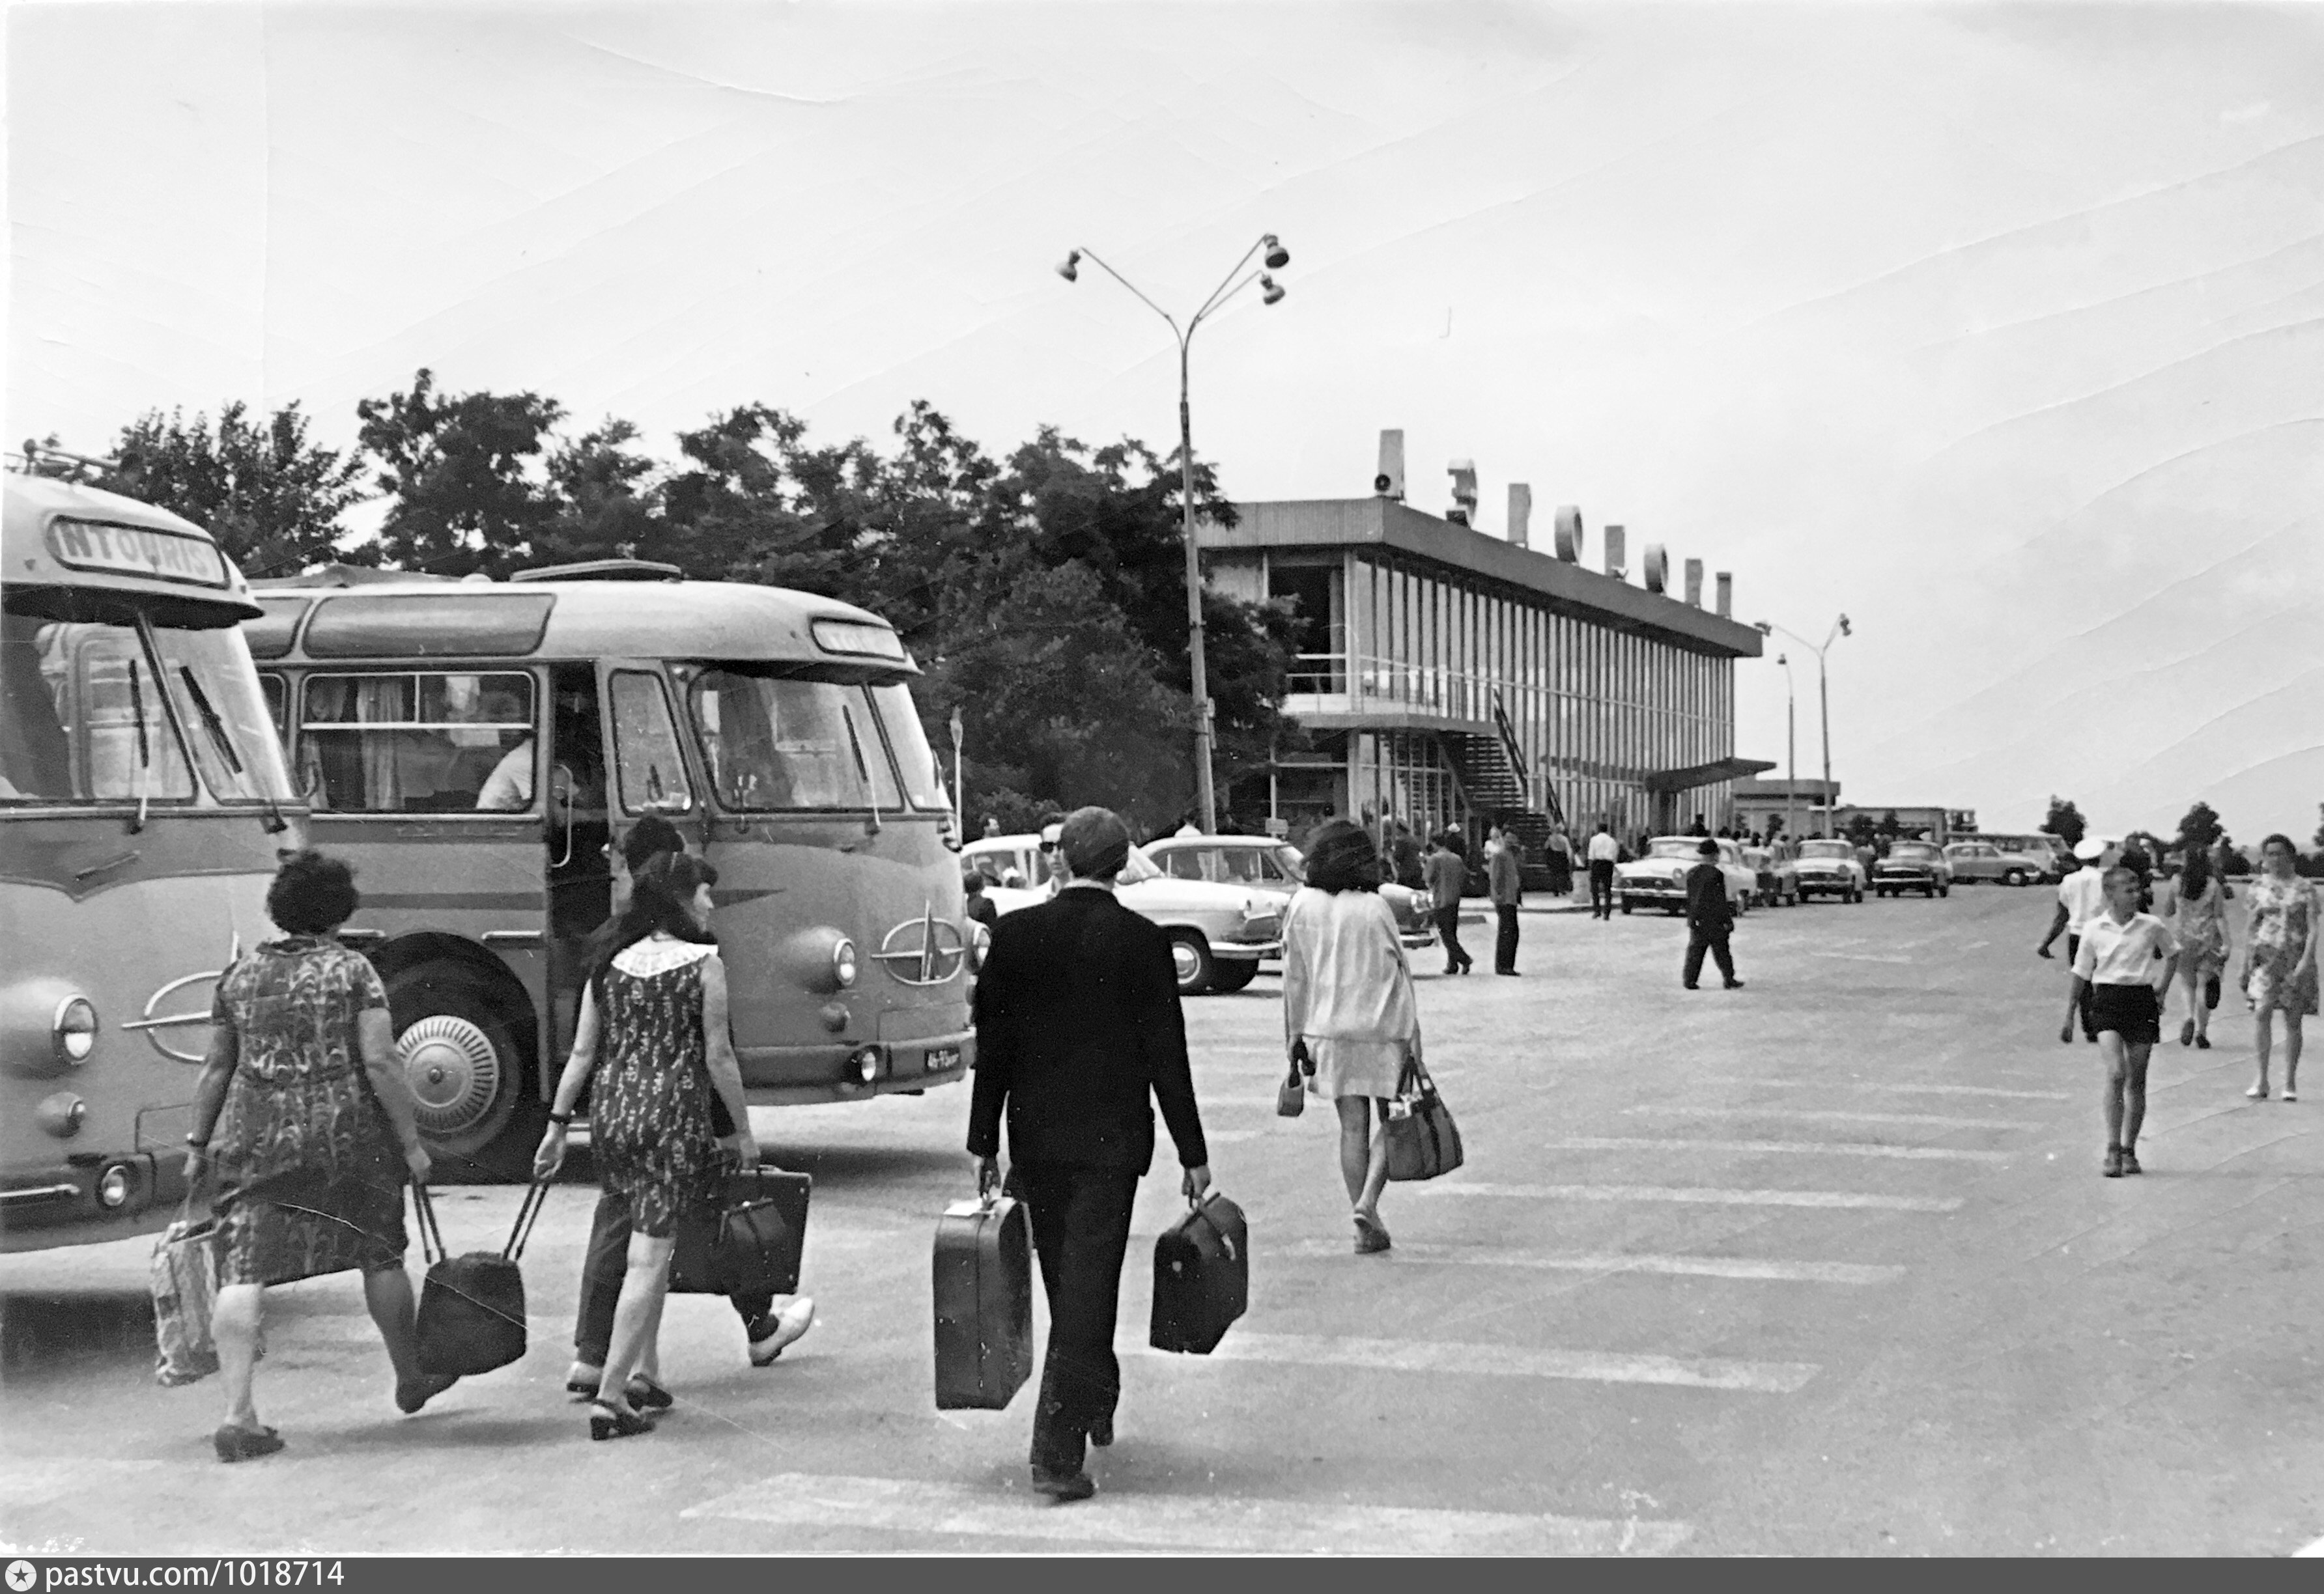 Старый аэропорт крыма